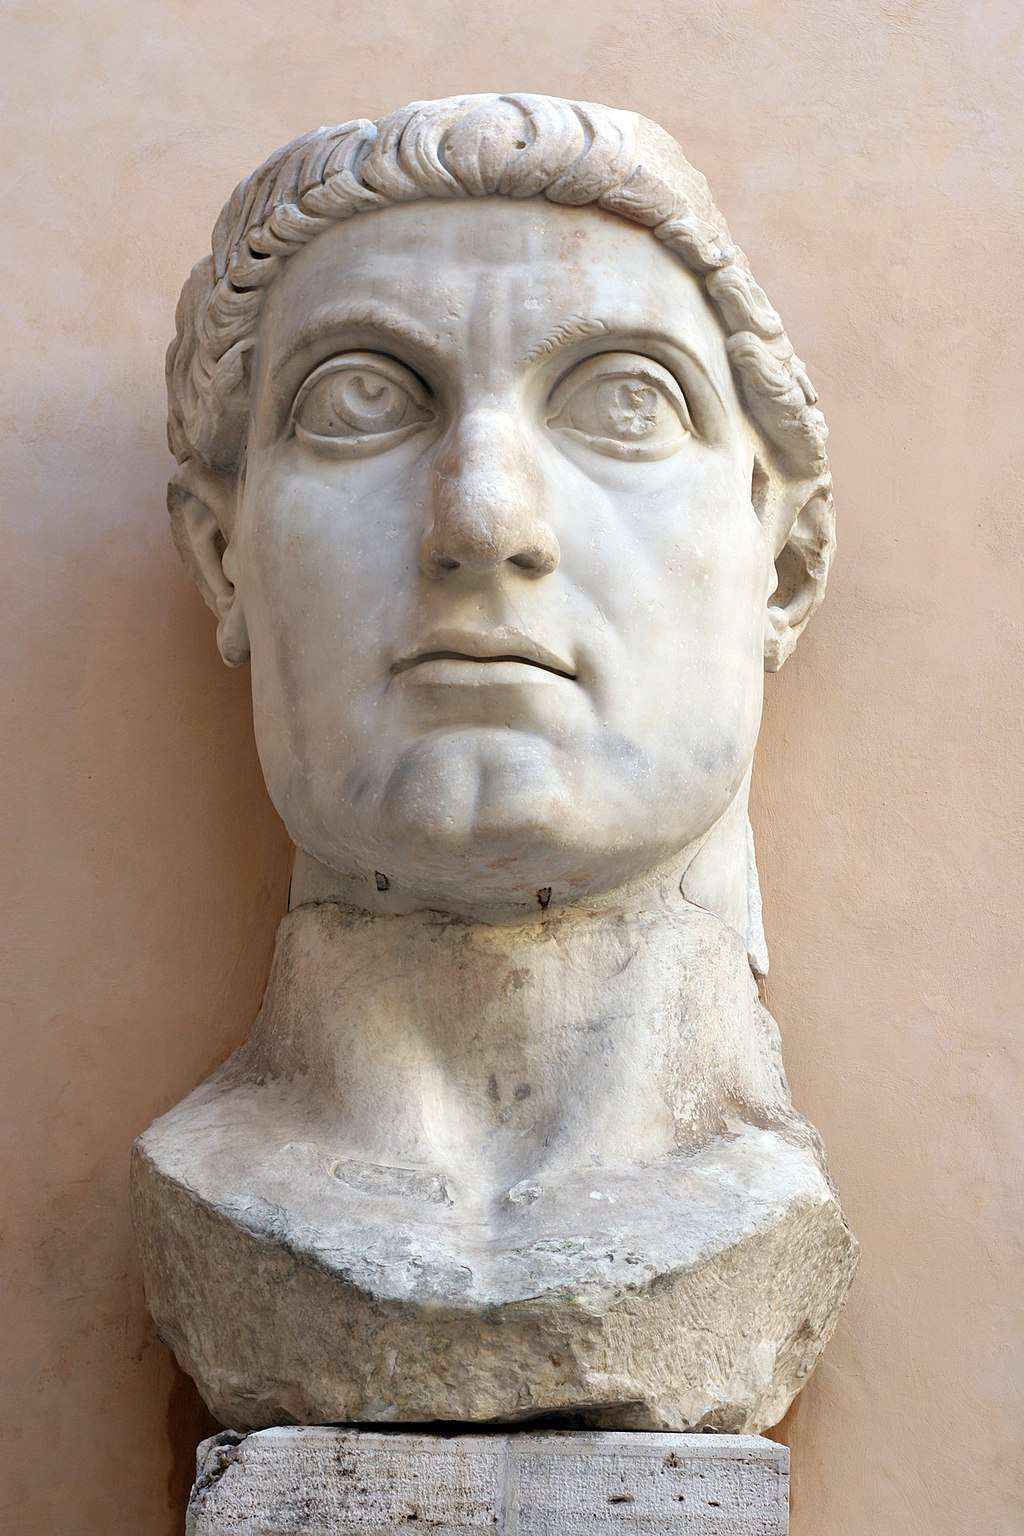 Le tête de Constantin le Grand issue de la statue colossale originale et préservée par les Musées Capitolins de Rome. © CC BY-SA 2.0, Camille King, Wikimedia Commons